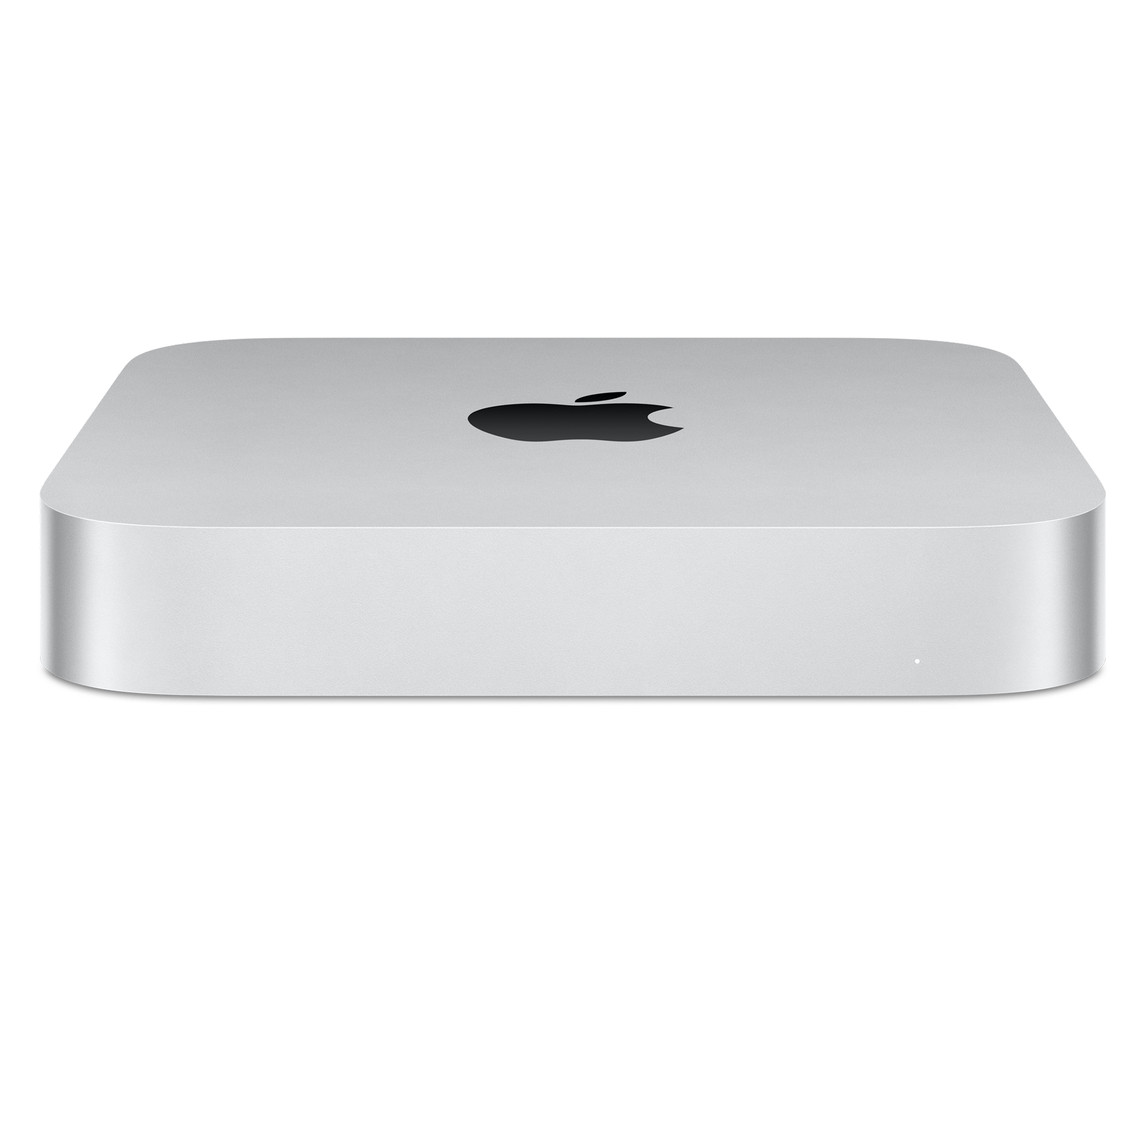 Widok z przodu przedstawiający ustawionego pod kątem Maca mini z logo Apple na górze